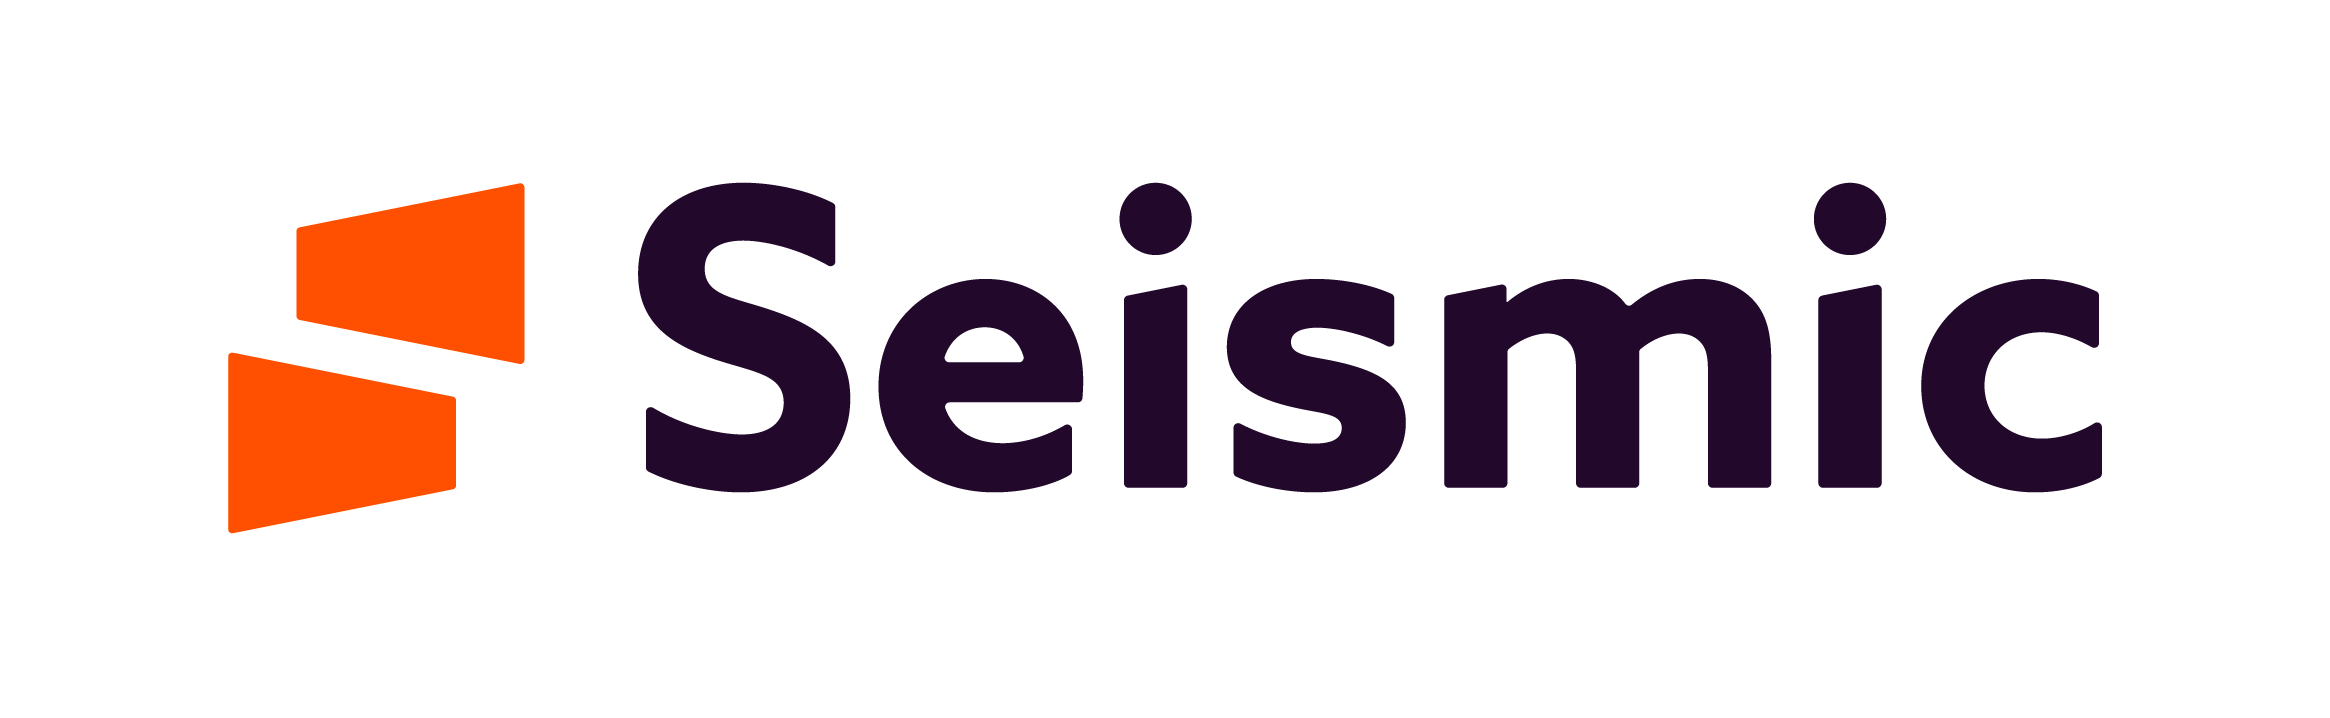 Seismic Logo Full Color